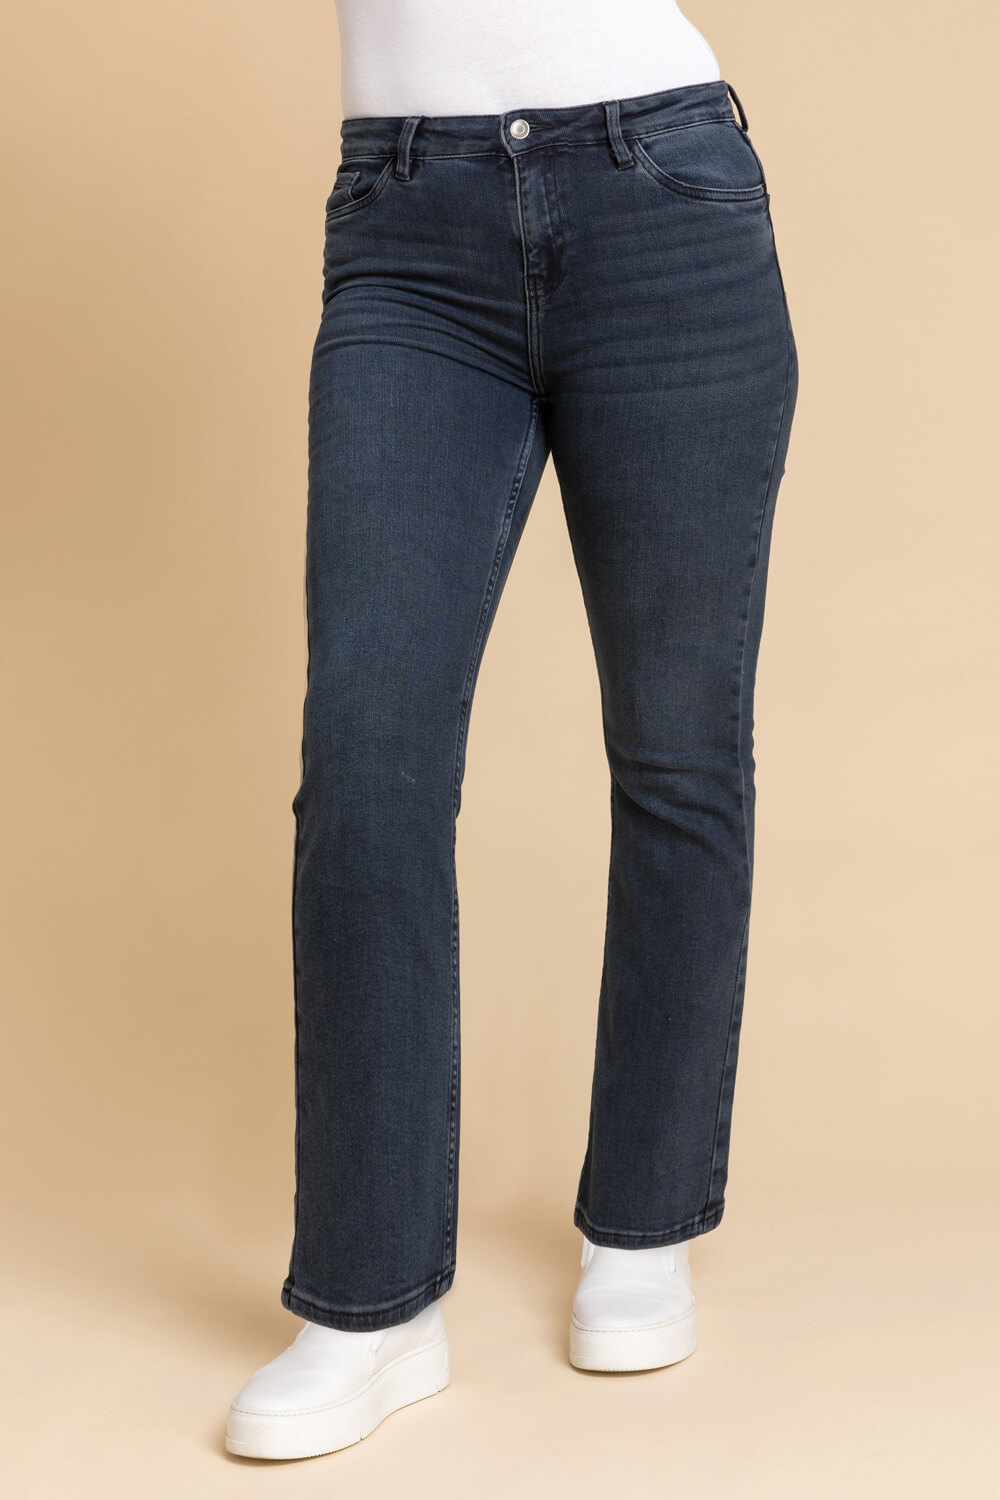 29 Essential Stretch Bootcut Jeans in Black - Roman Originals UK